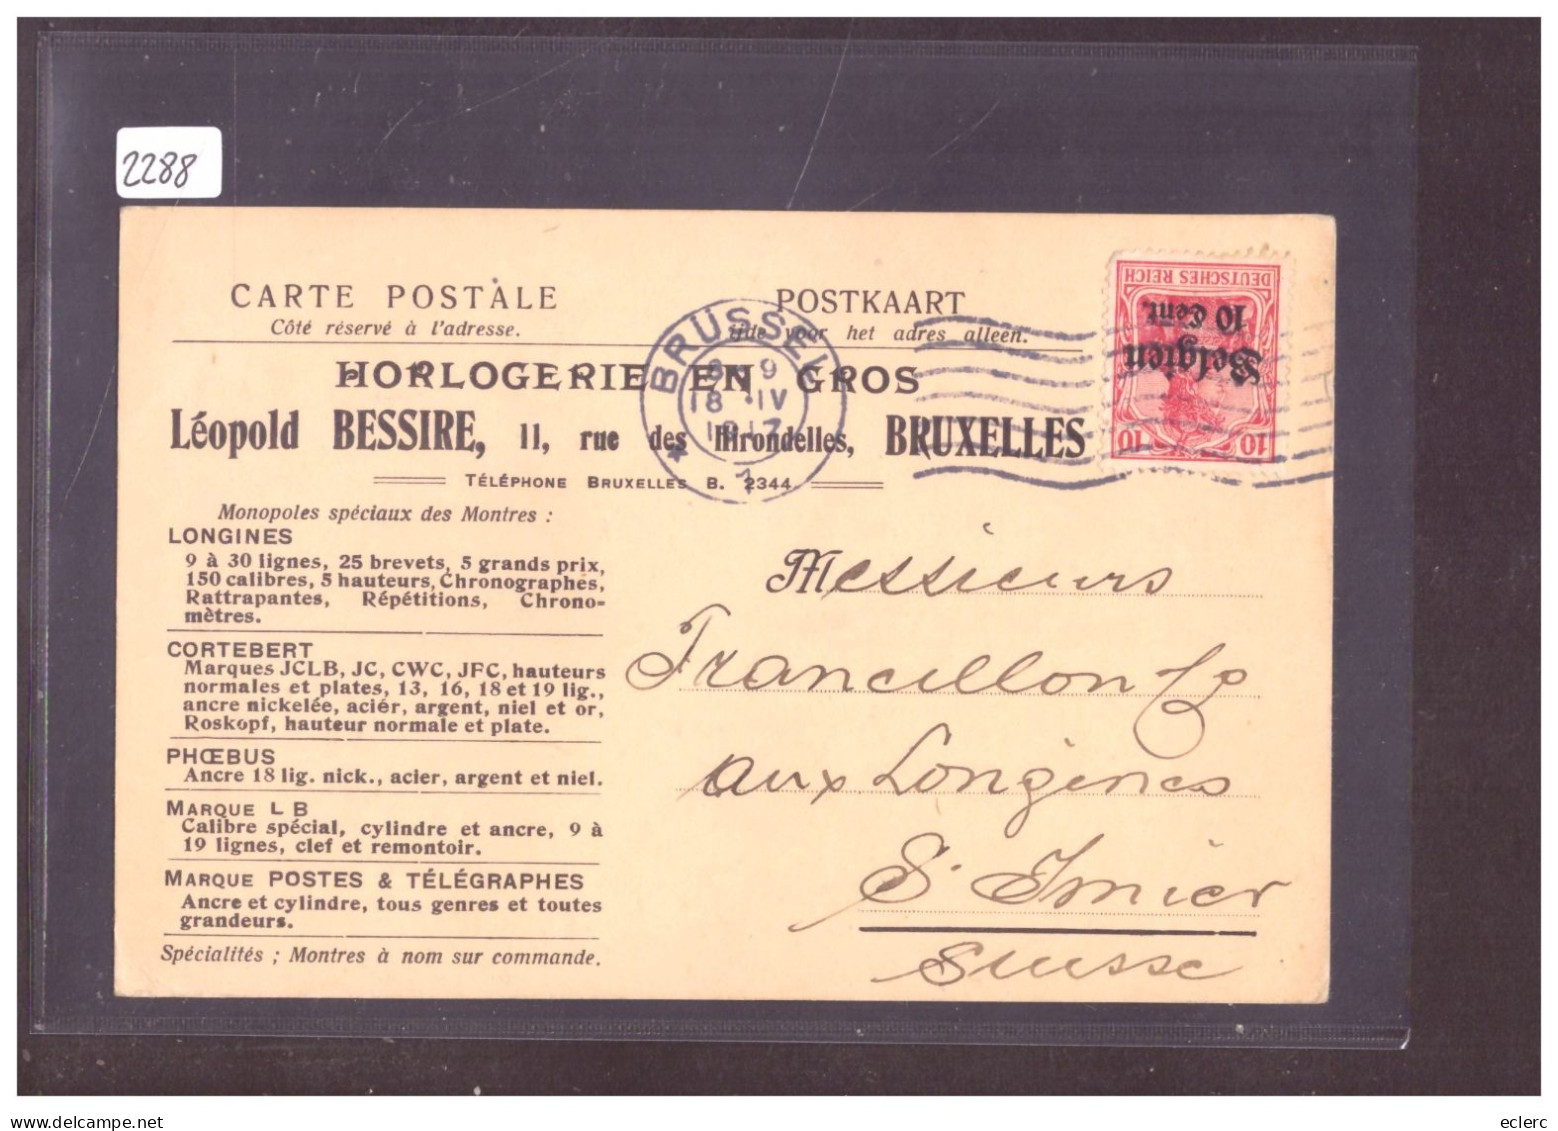 BELGIQUE ALLEMANDE - CARTE HORLOGERIE LEOPOLD BESSIRE, BRUXELLES  - ( WARNING: NO PAYPAL ) - OC38/54 Occupation Belge En Allemagne